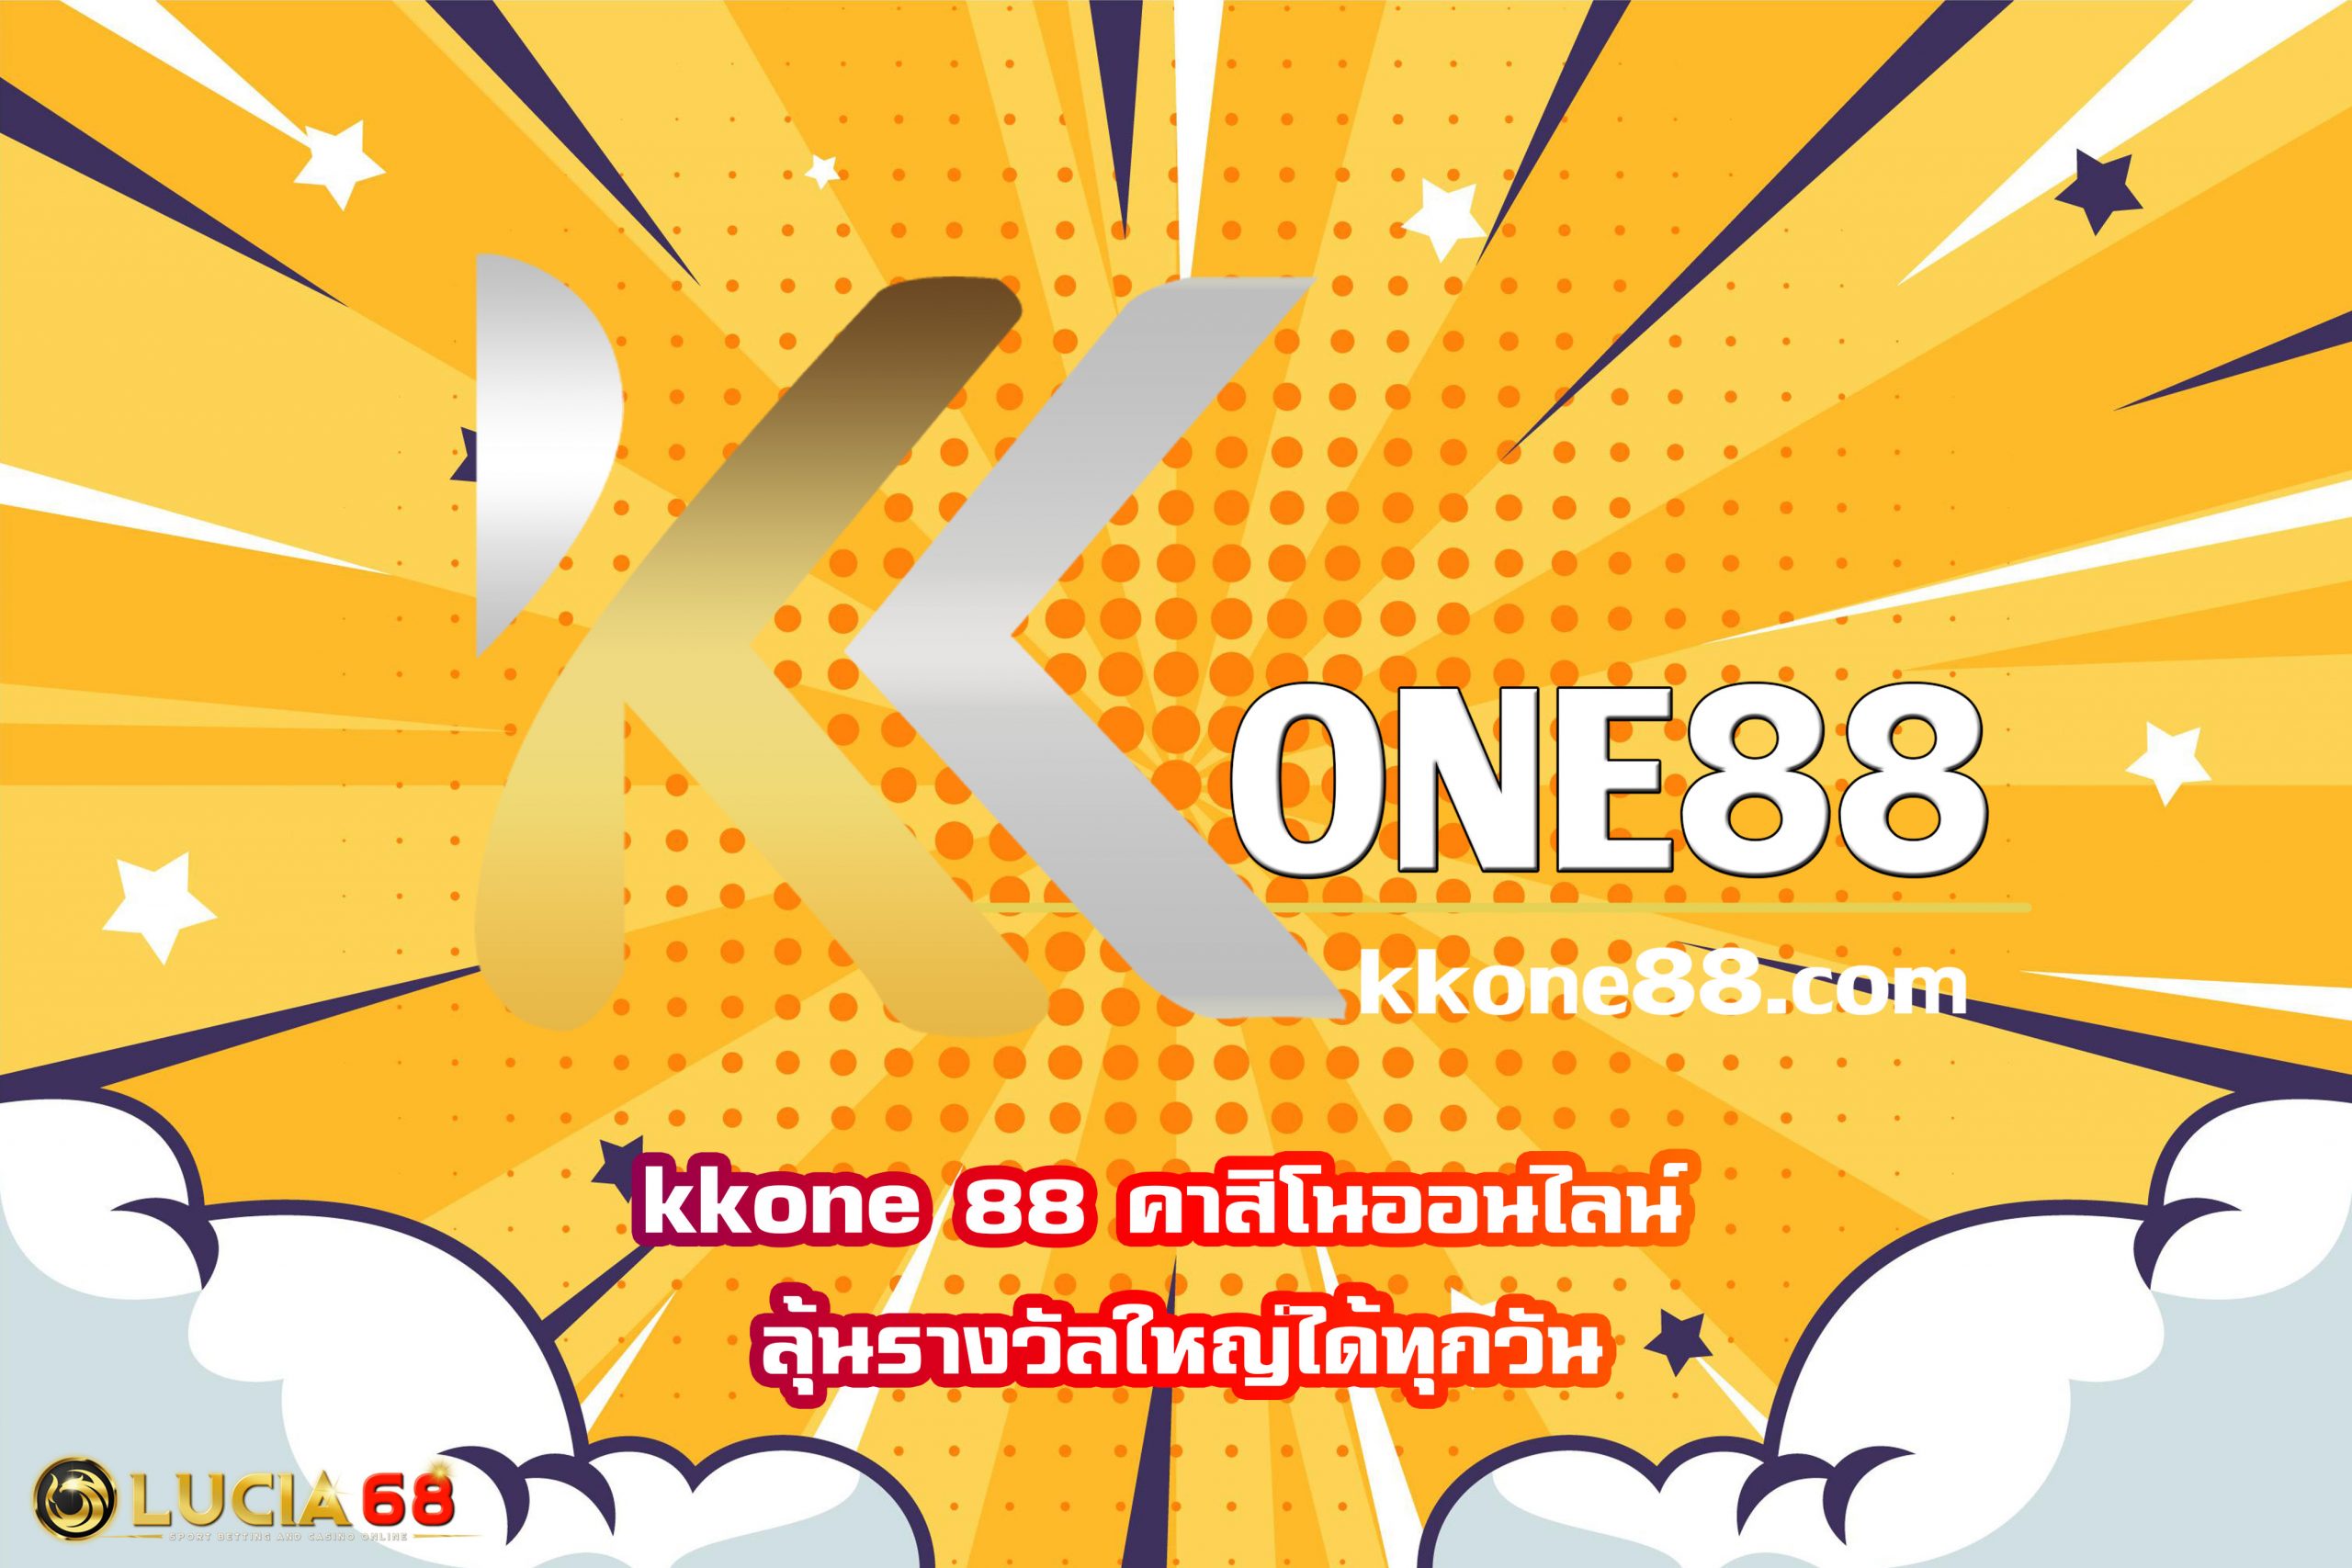 kkone 88 คาสิโนออนไลน์ ลุ้นรางวัลใหญ่ได้ทุกวัน